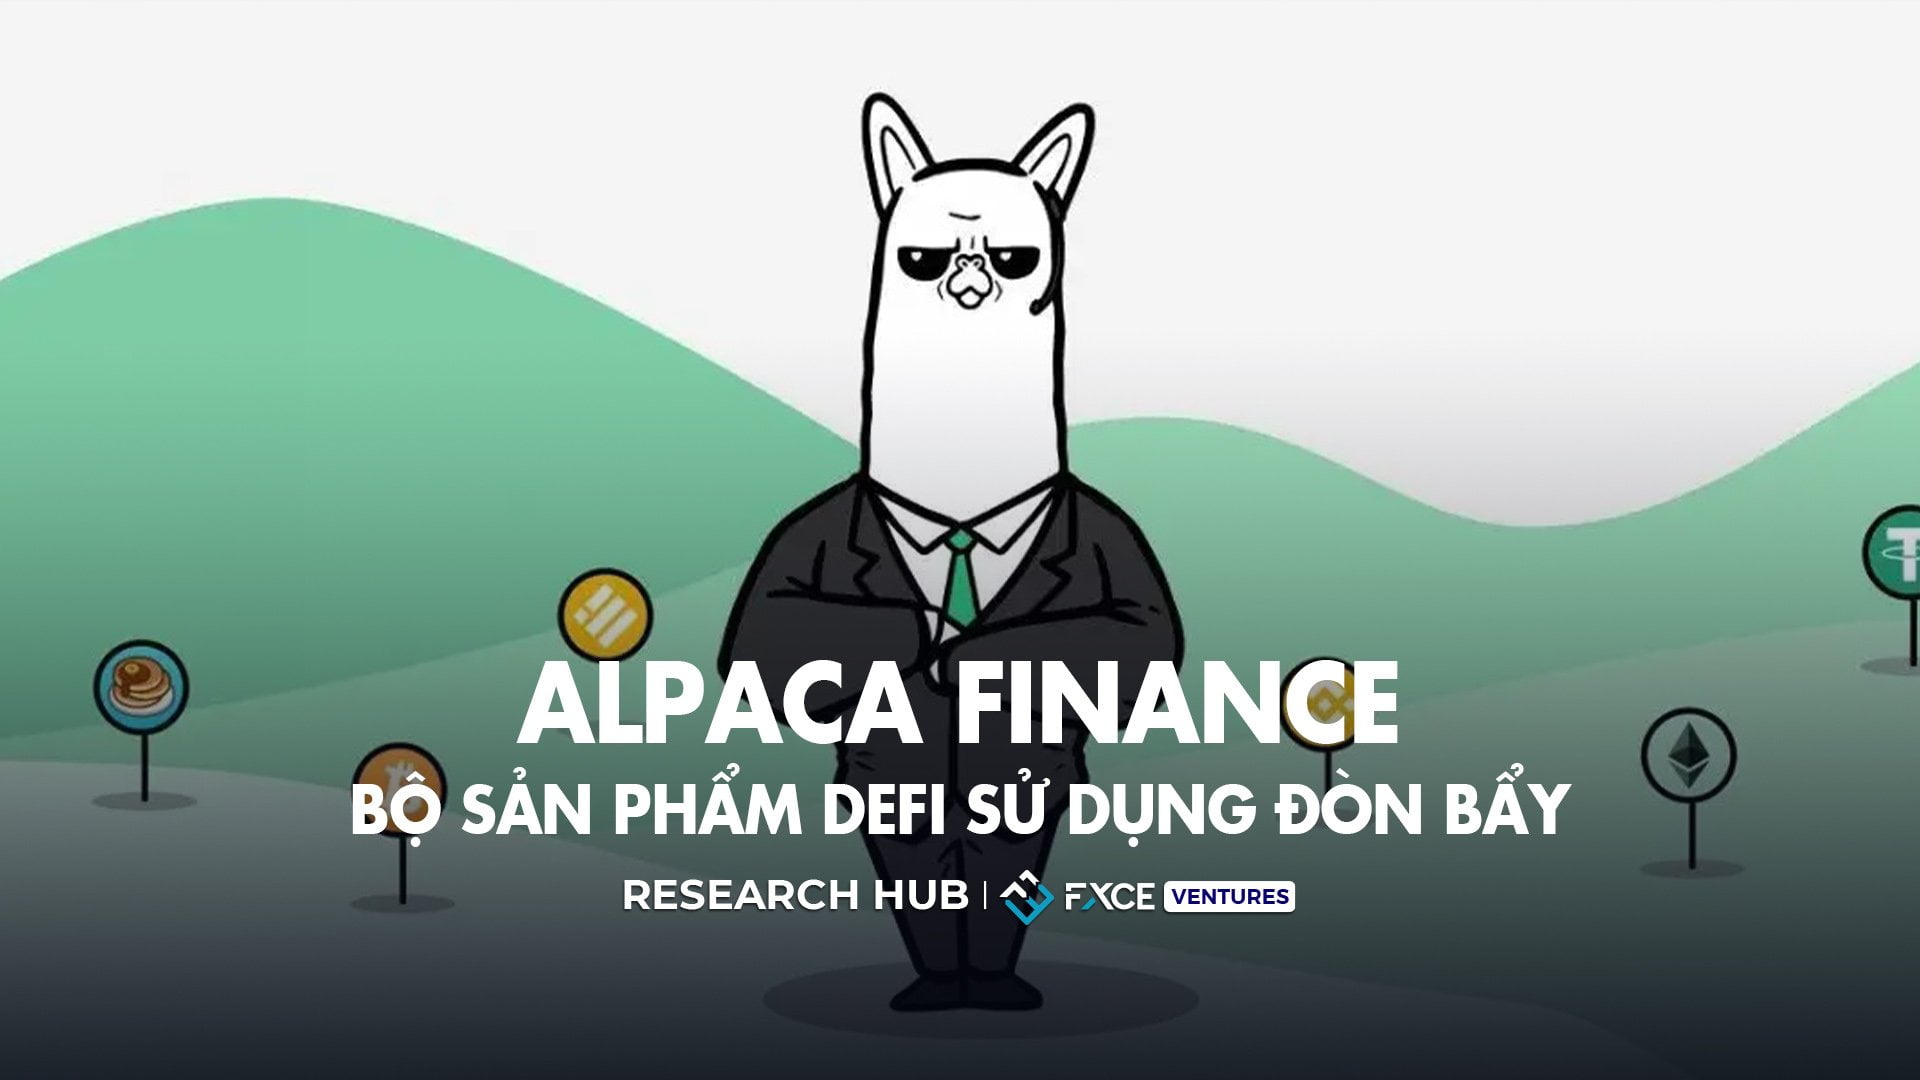 Alpaca Finance: Bộ sản phẩm DeFi sử dụng đòn bẩy